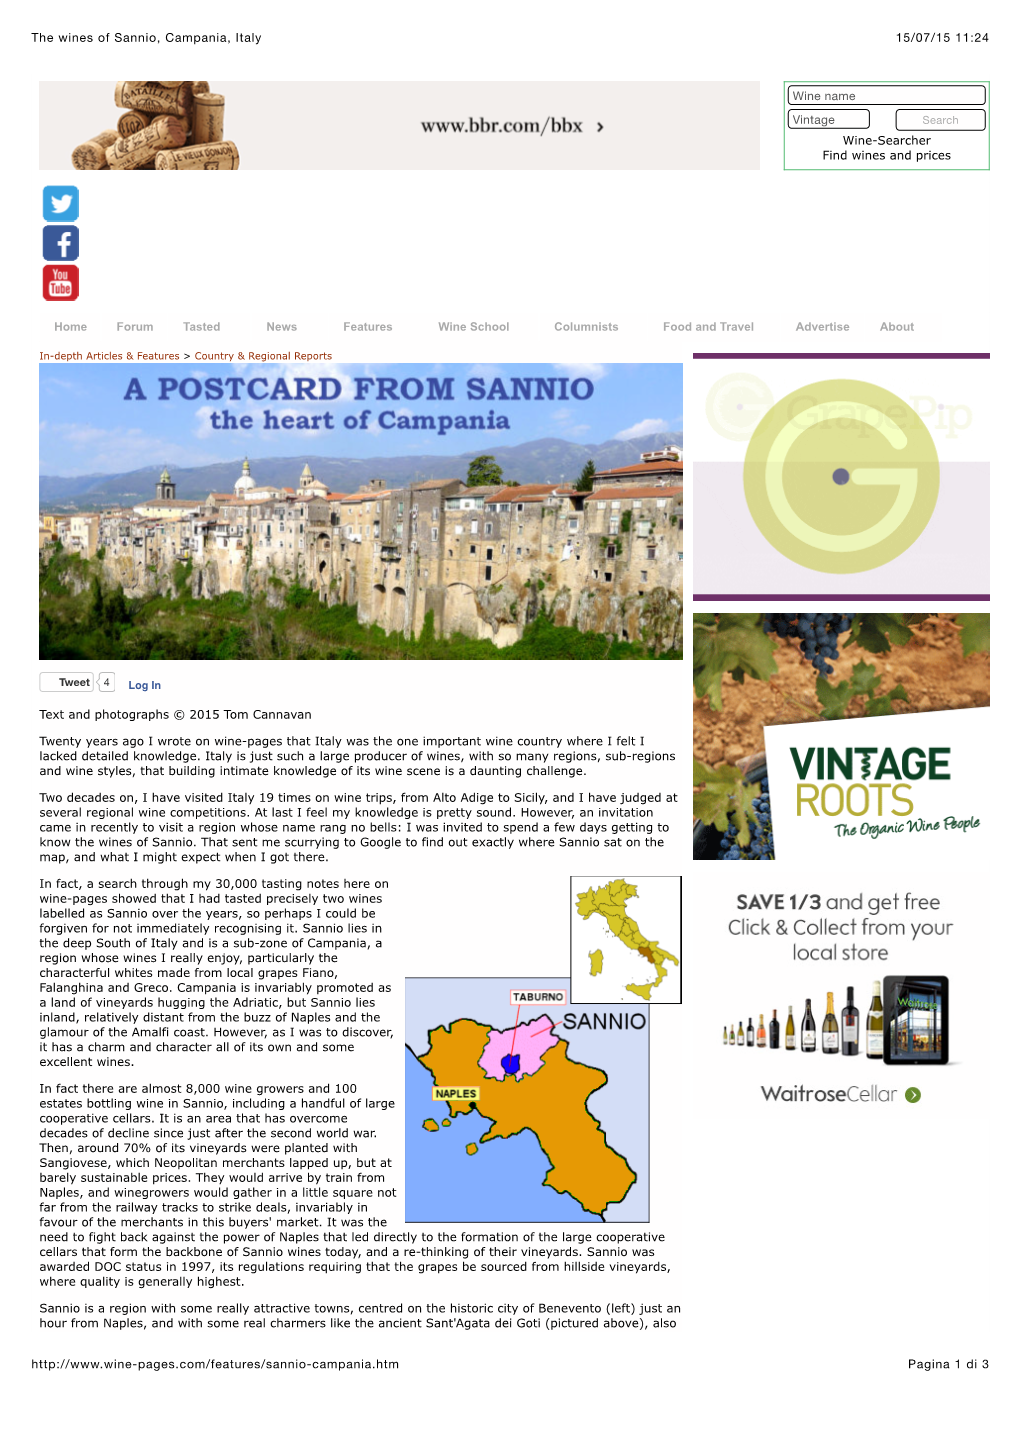 15/07/15 11:24 the Wines of Sannio, Campania, Italy Pagina 1 Di 3 Http